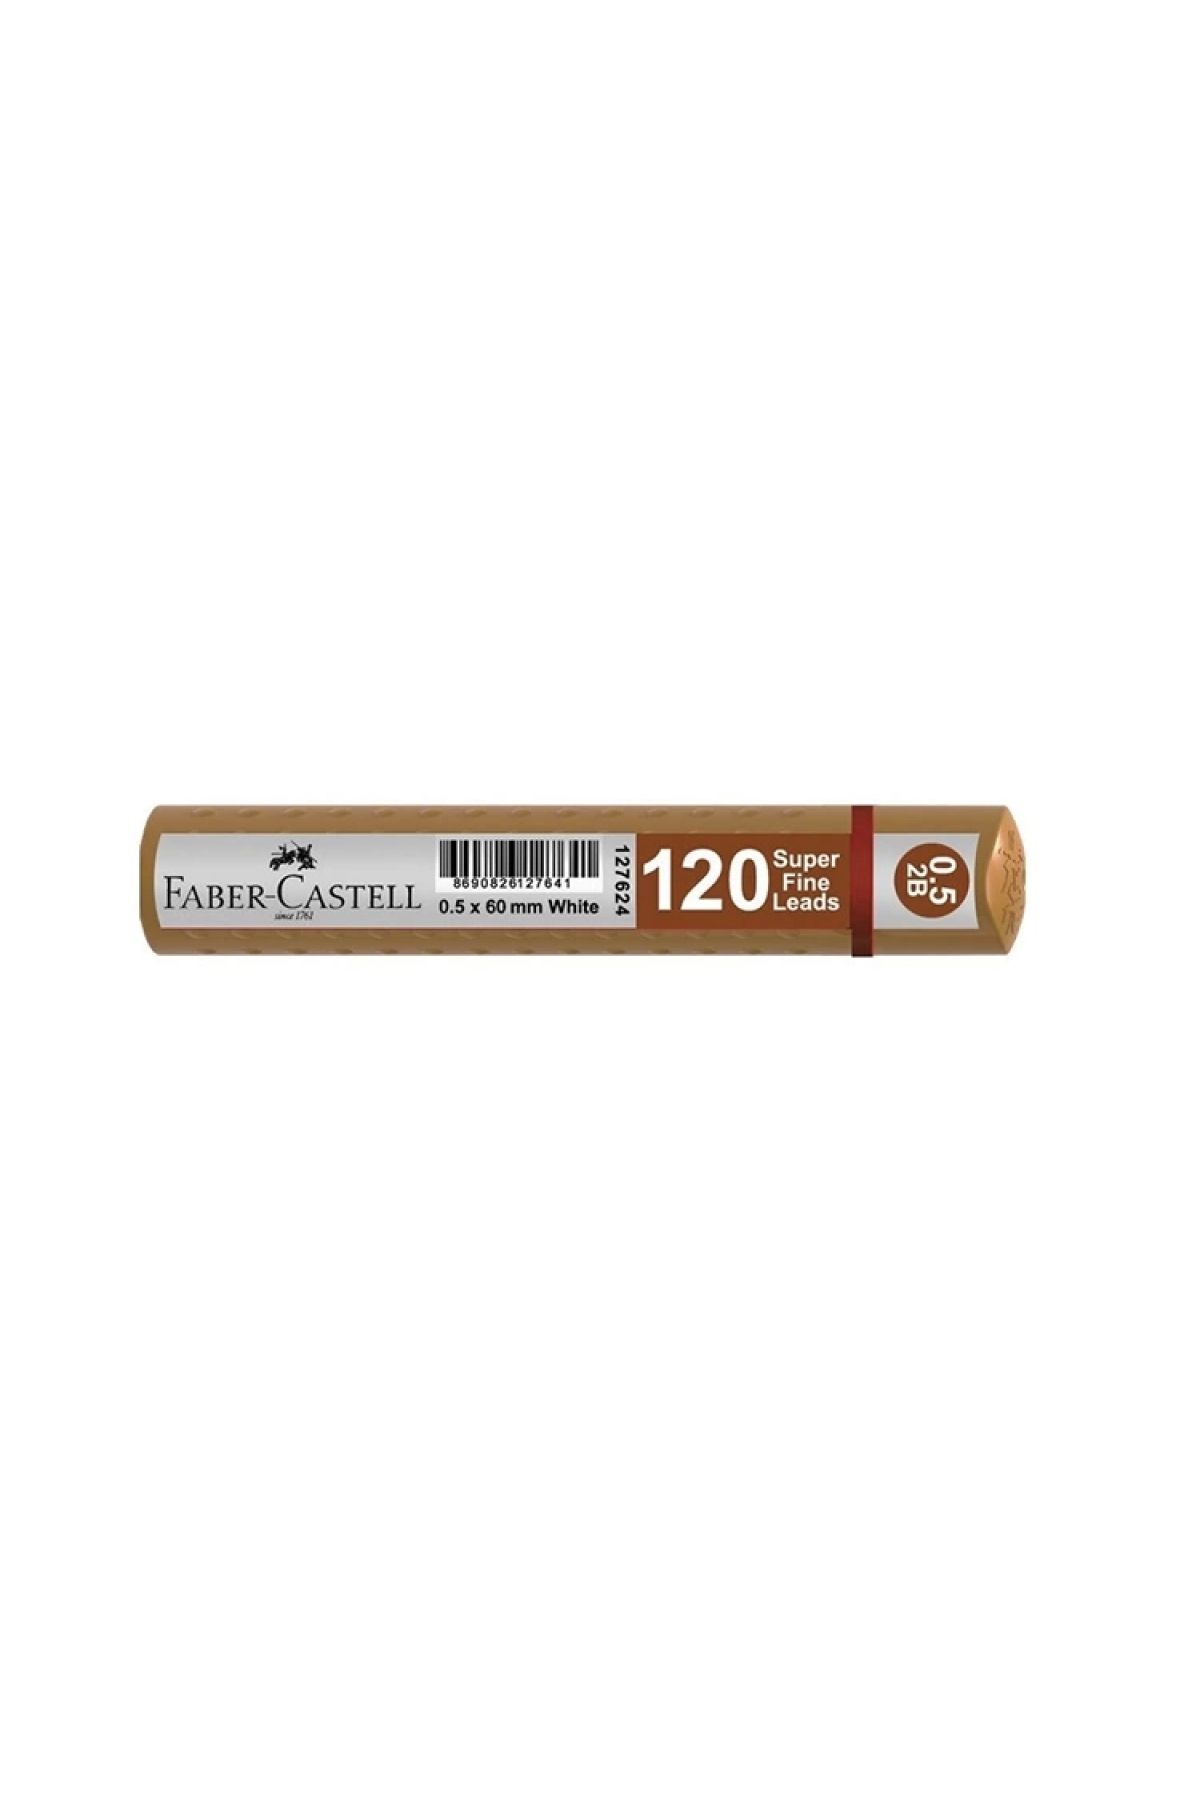 Faber Castell 120'li Min 0.5 2b 60mm Uç Gold Tüp - 127680